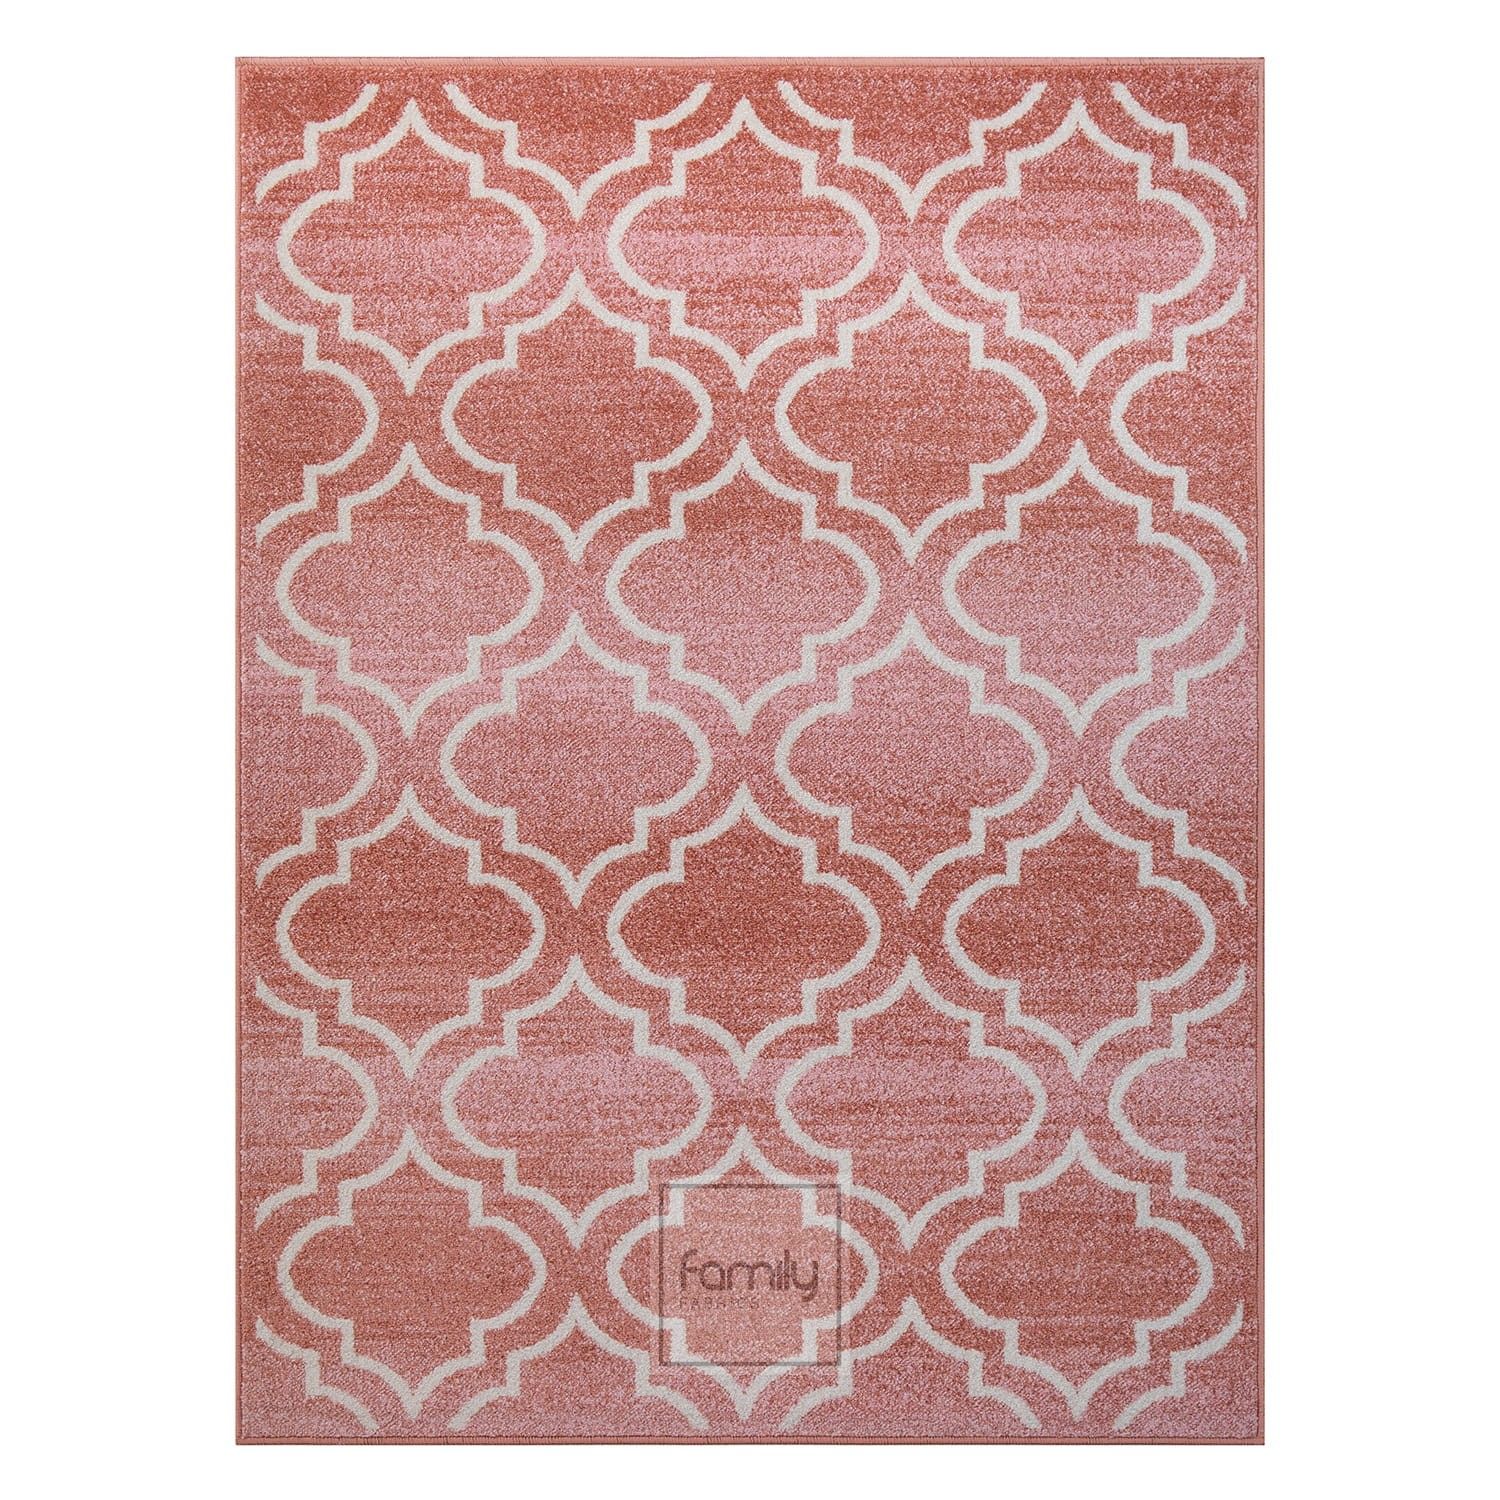 DomTextilu Originálny staroružový koberec v škandinávskom štýle 44390-234252